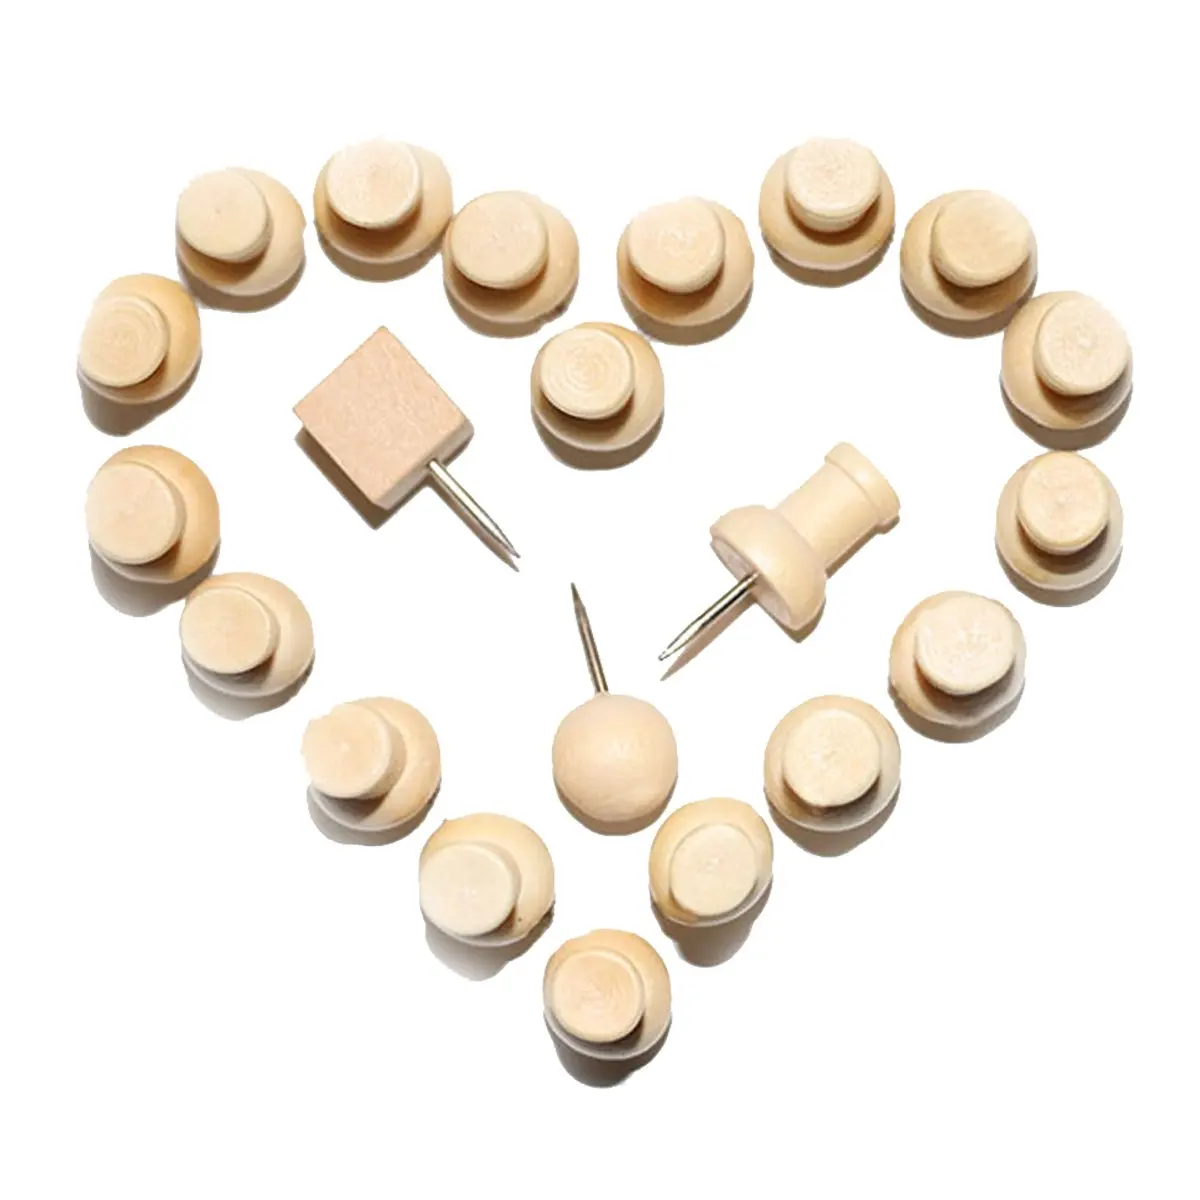 PPYY NEW-деревянные кнопочные булавки, сочетают восьмиугольник I-shape круглый квадратный цилиндр в форме соломенной шляпы деревянный Thumb Tacks